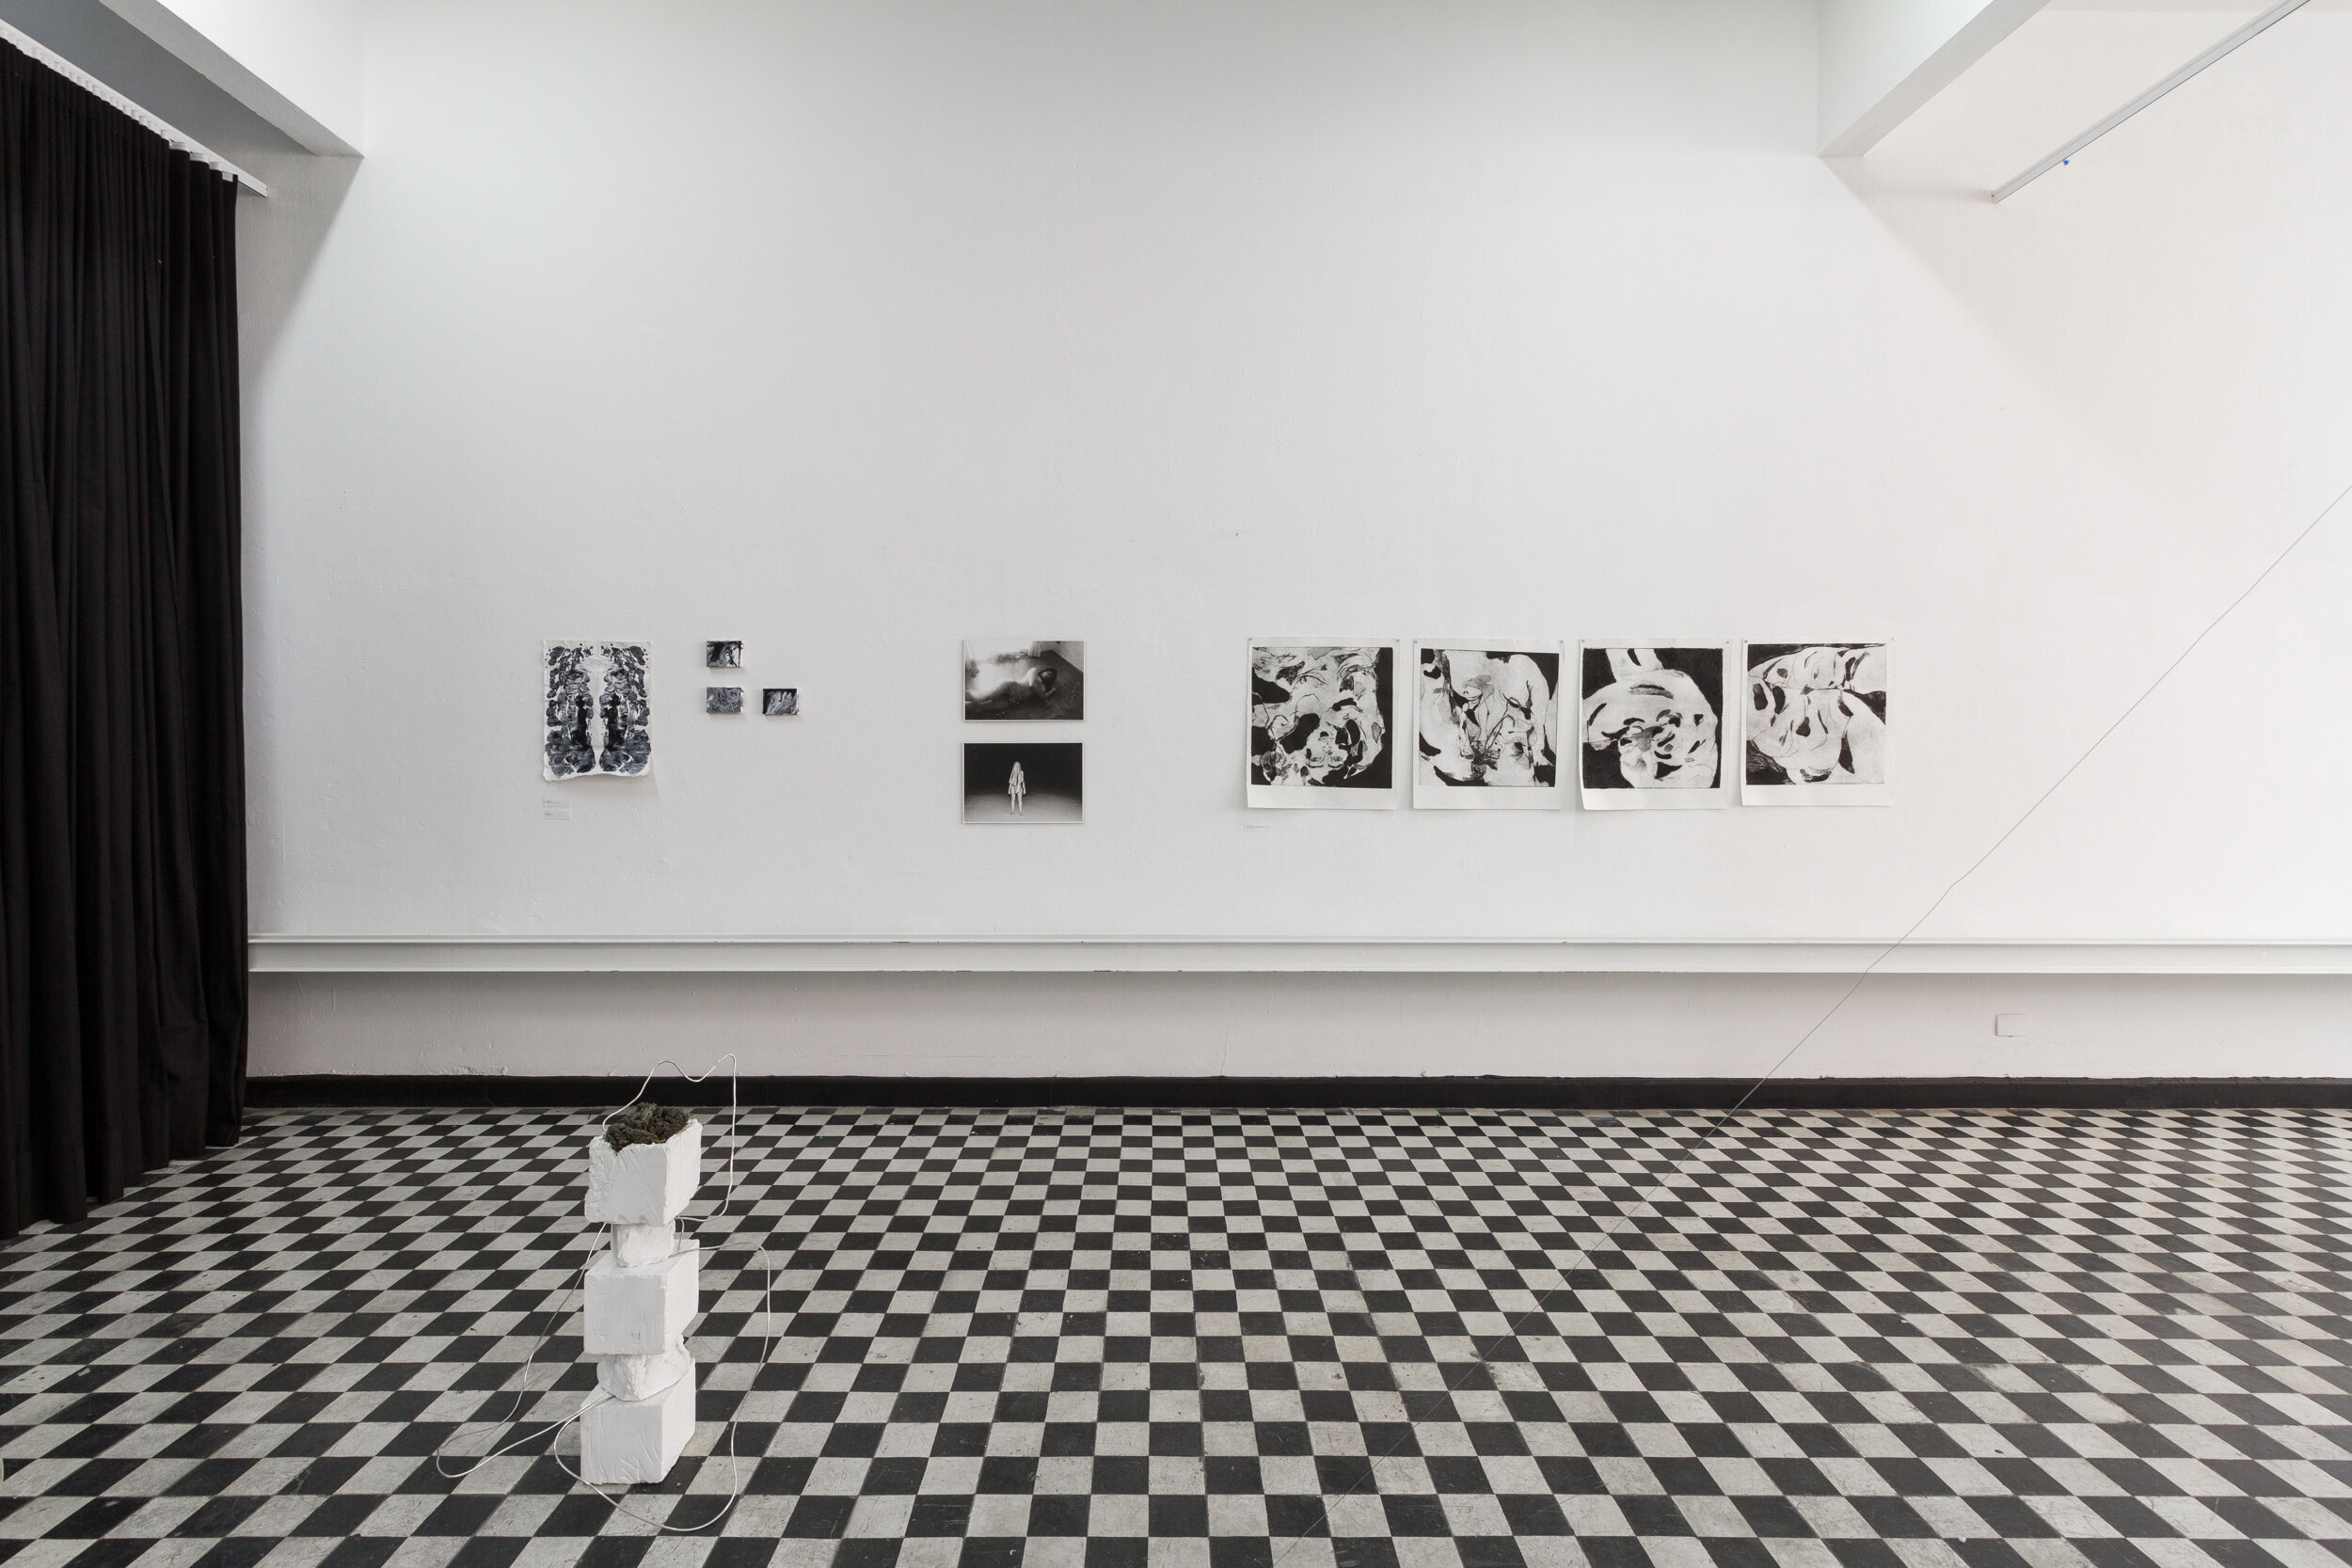  Vista da exposição Ânima, curadoria Piscina – Paula Plee e Ana Roman, realizada em 30 de novembro de 2019, no CC.Espaço, São Paulo-SP, Brasil – Foto: © Flagrante/Romullo Fontenelle. 